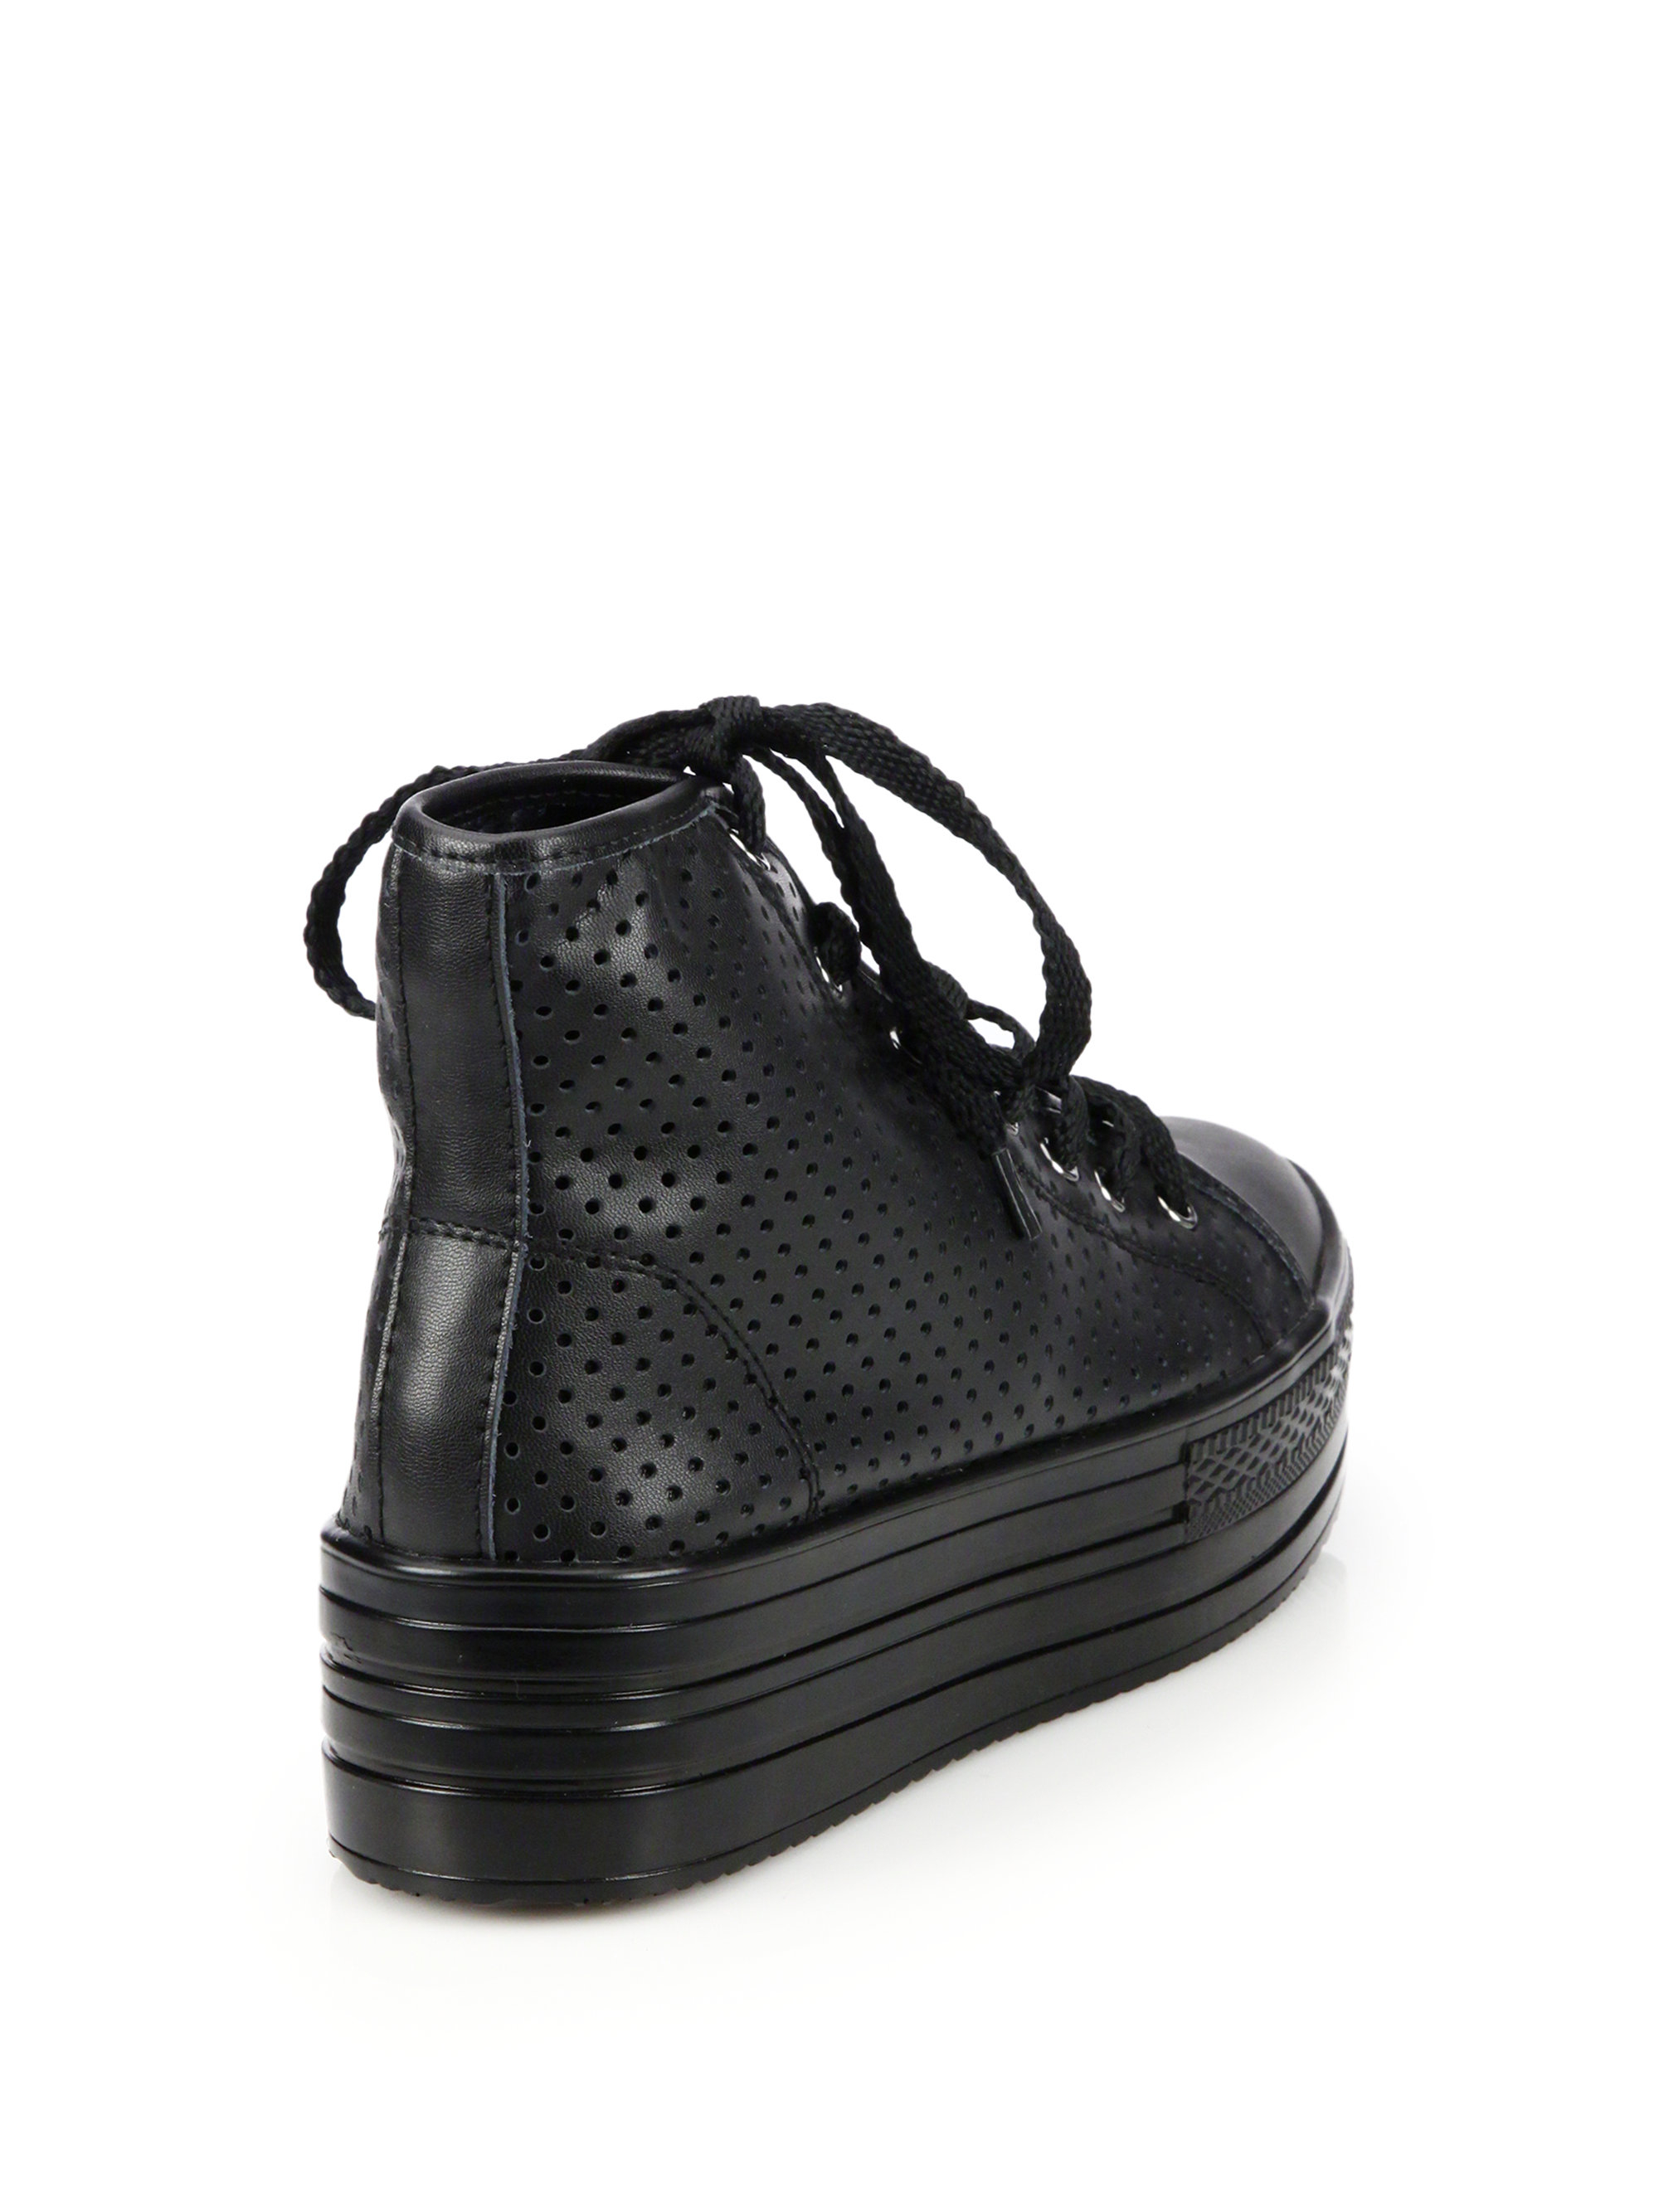 Junya Watanabe Perforated Leather Platform Sneakers in Black - Lyst